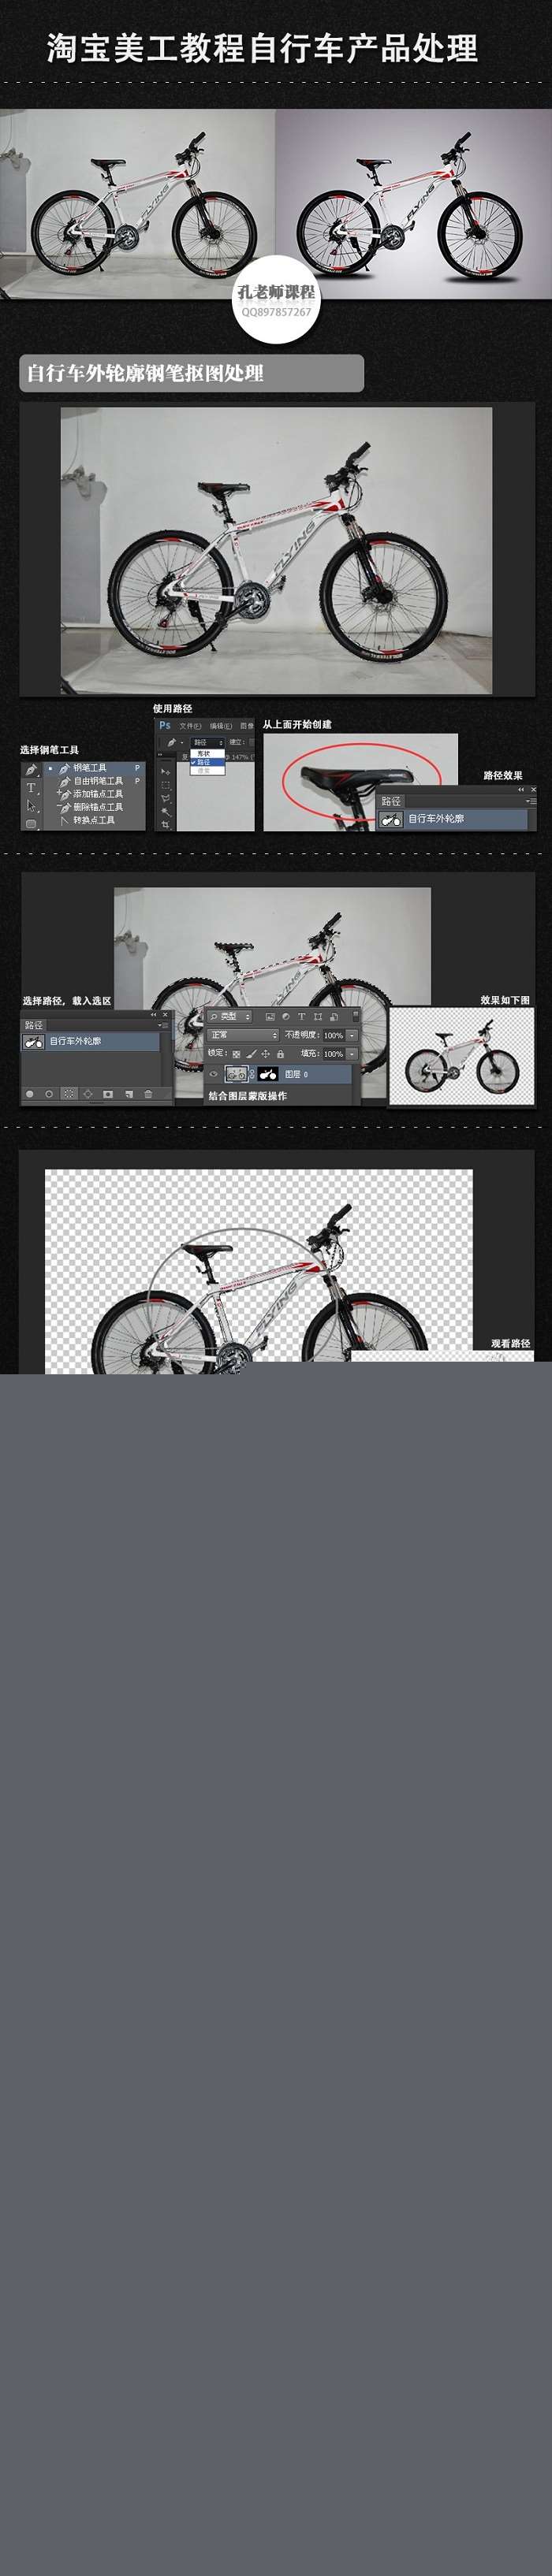 淘宝美工教程Photoshop自行车修图处理 三联